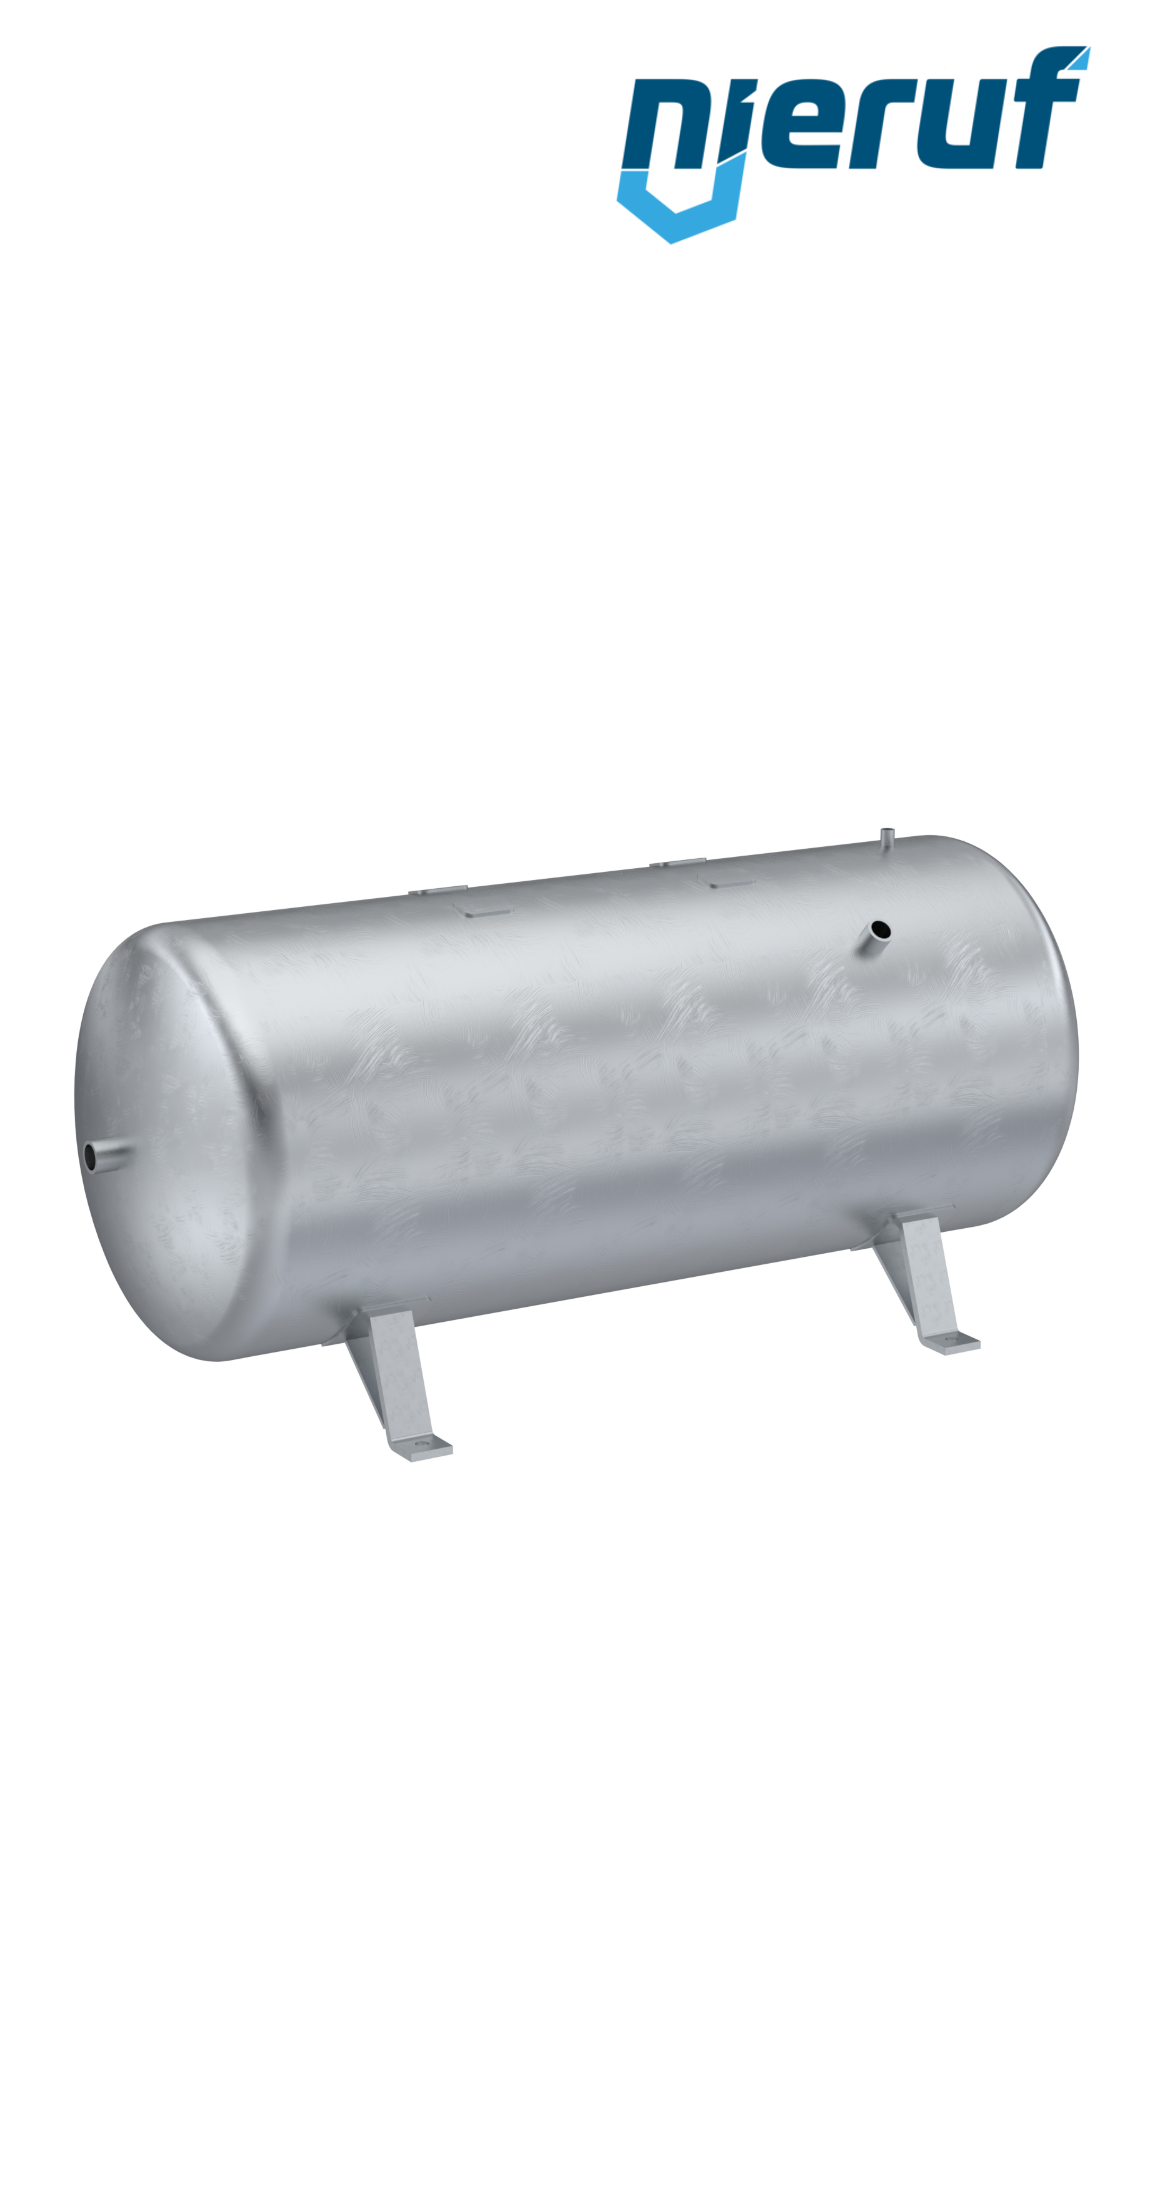 Serbatoio a pressione orizzontale BE01 750 litri, 0-11 bar, acciaio primerizzato